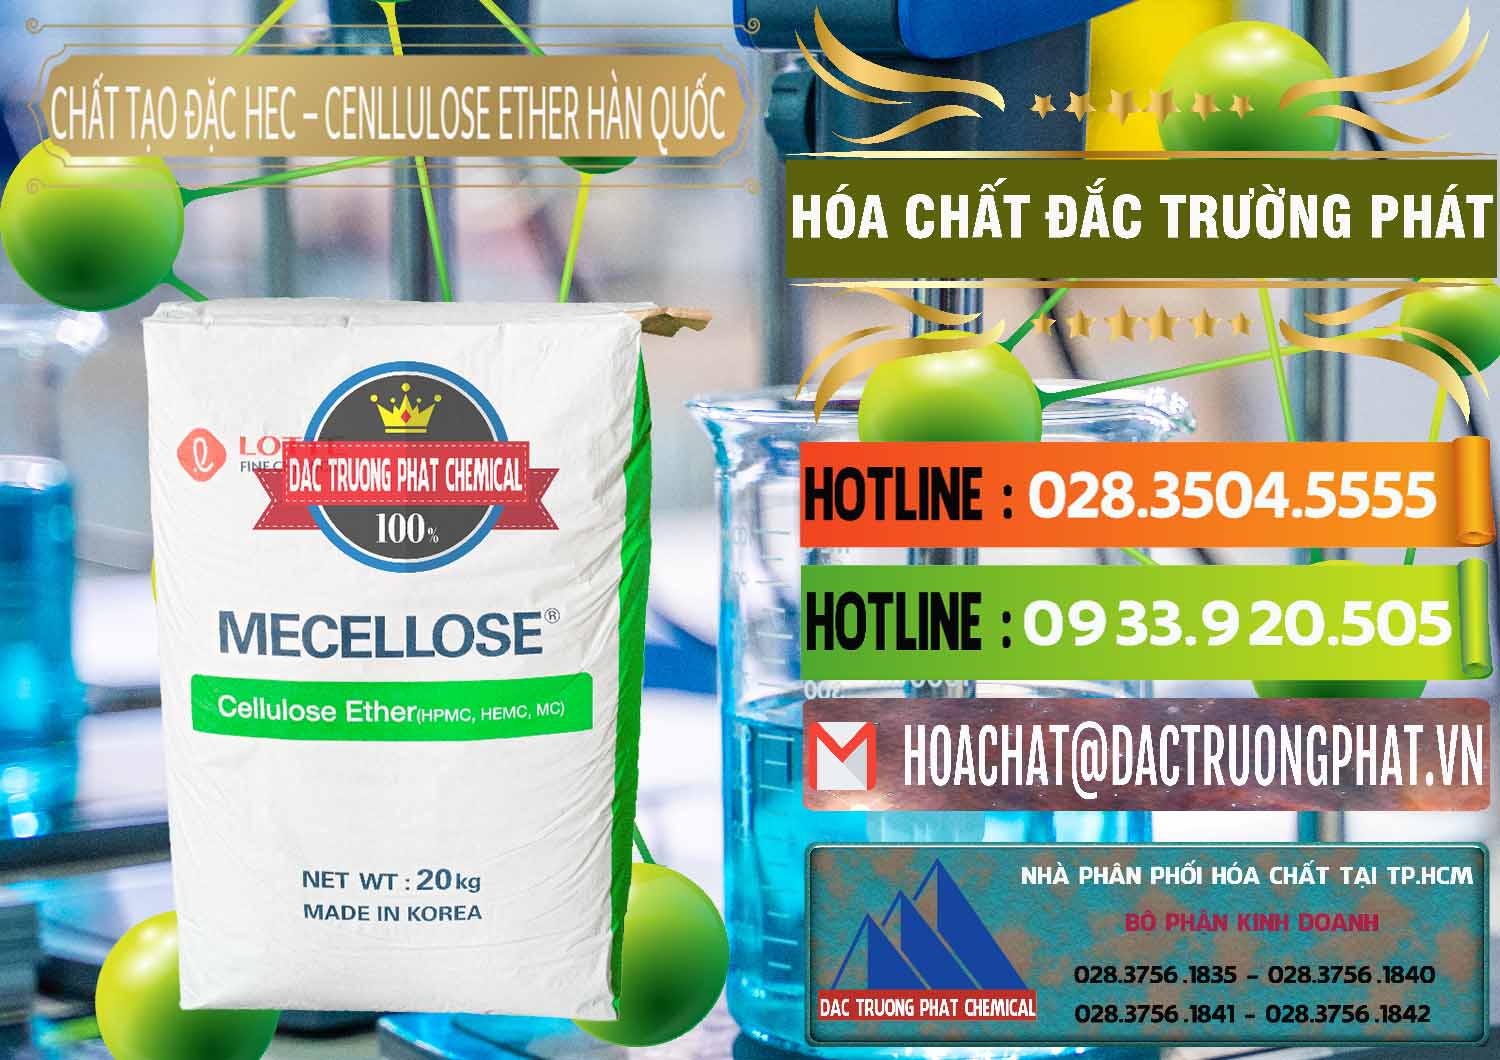 Nơi chuyên cung cấp & bán Chất Tạo Đặc Hec Mecellose – Cenllulose Ether Lotte Hàn Quốc Korea - 0050 - Nhà phân phối ( kinh doanh ) hóa chất tại TP.HCM - cungcaphoachat.com.vn